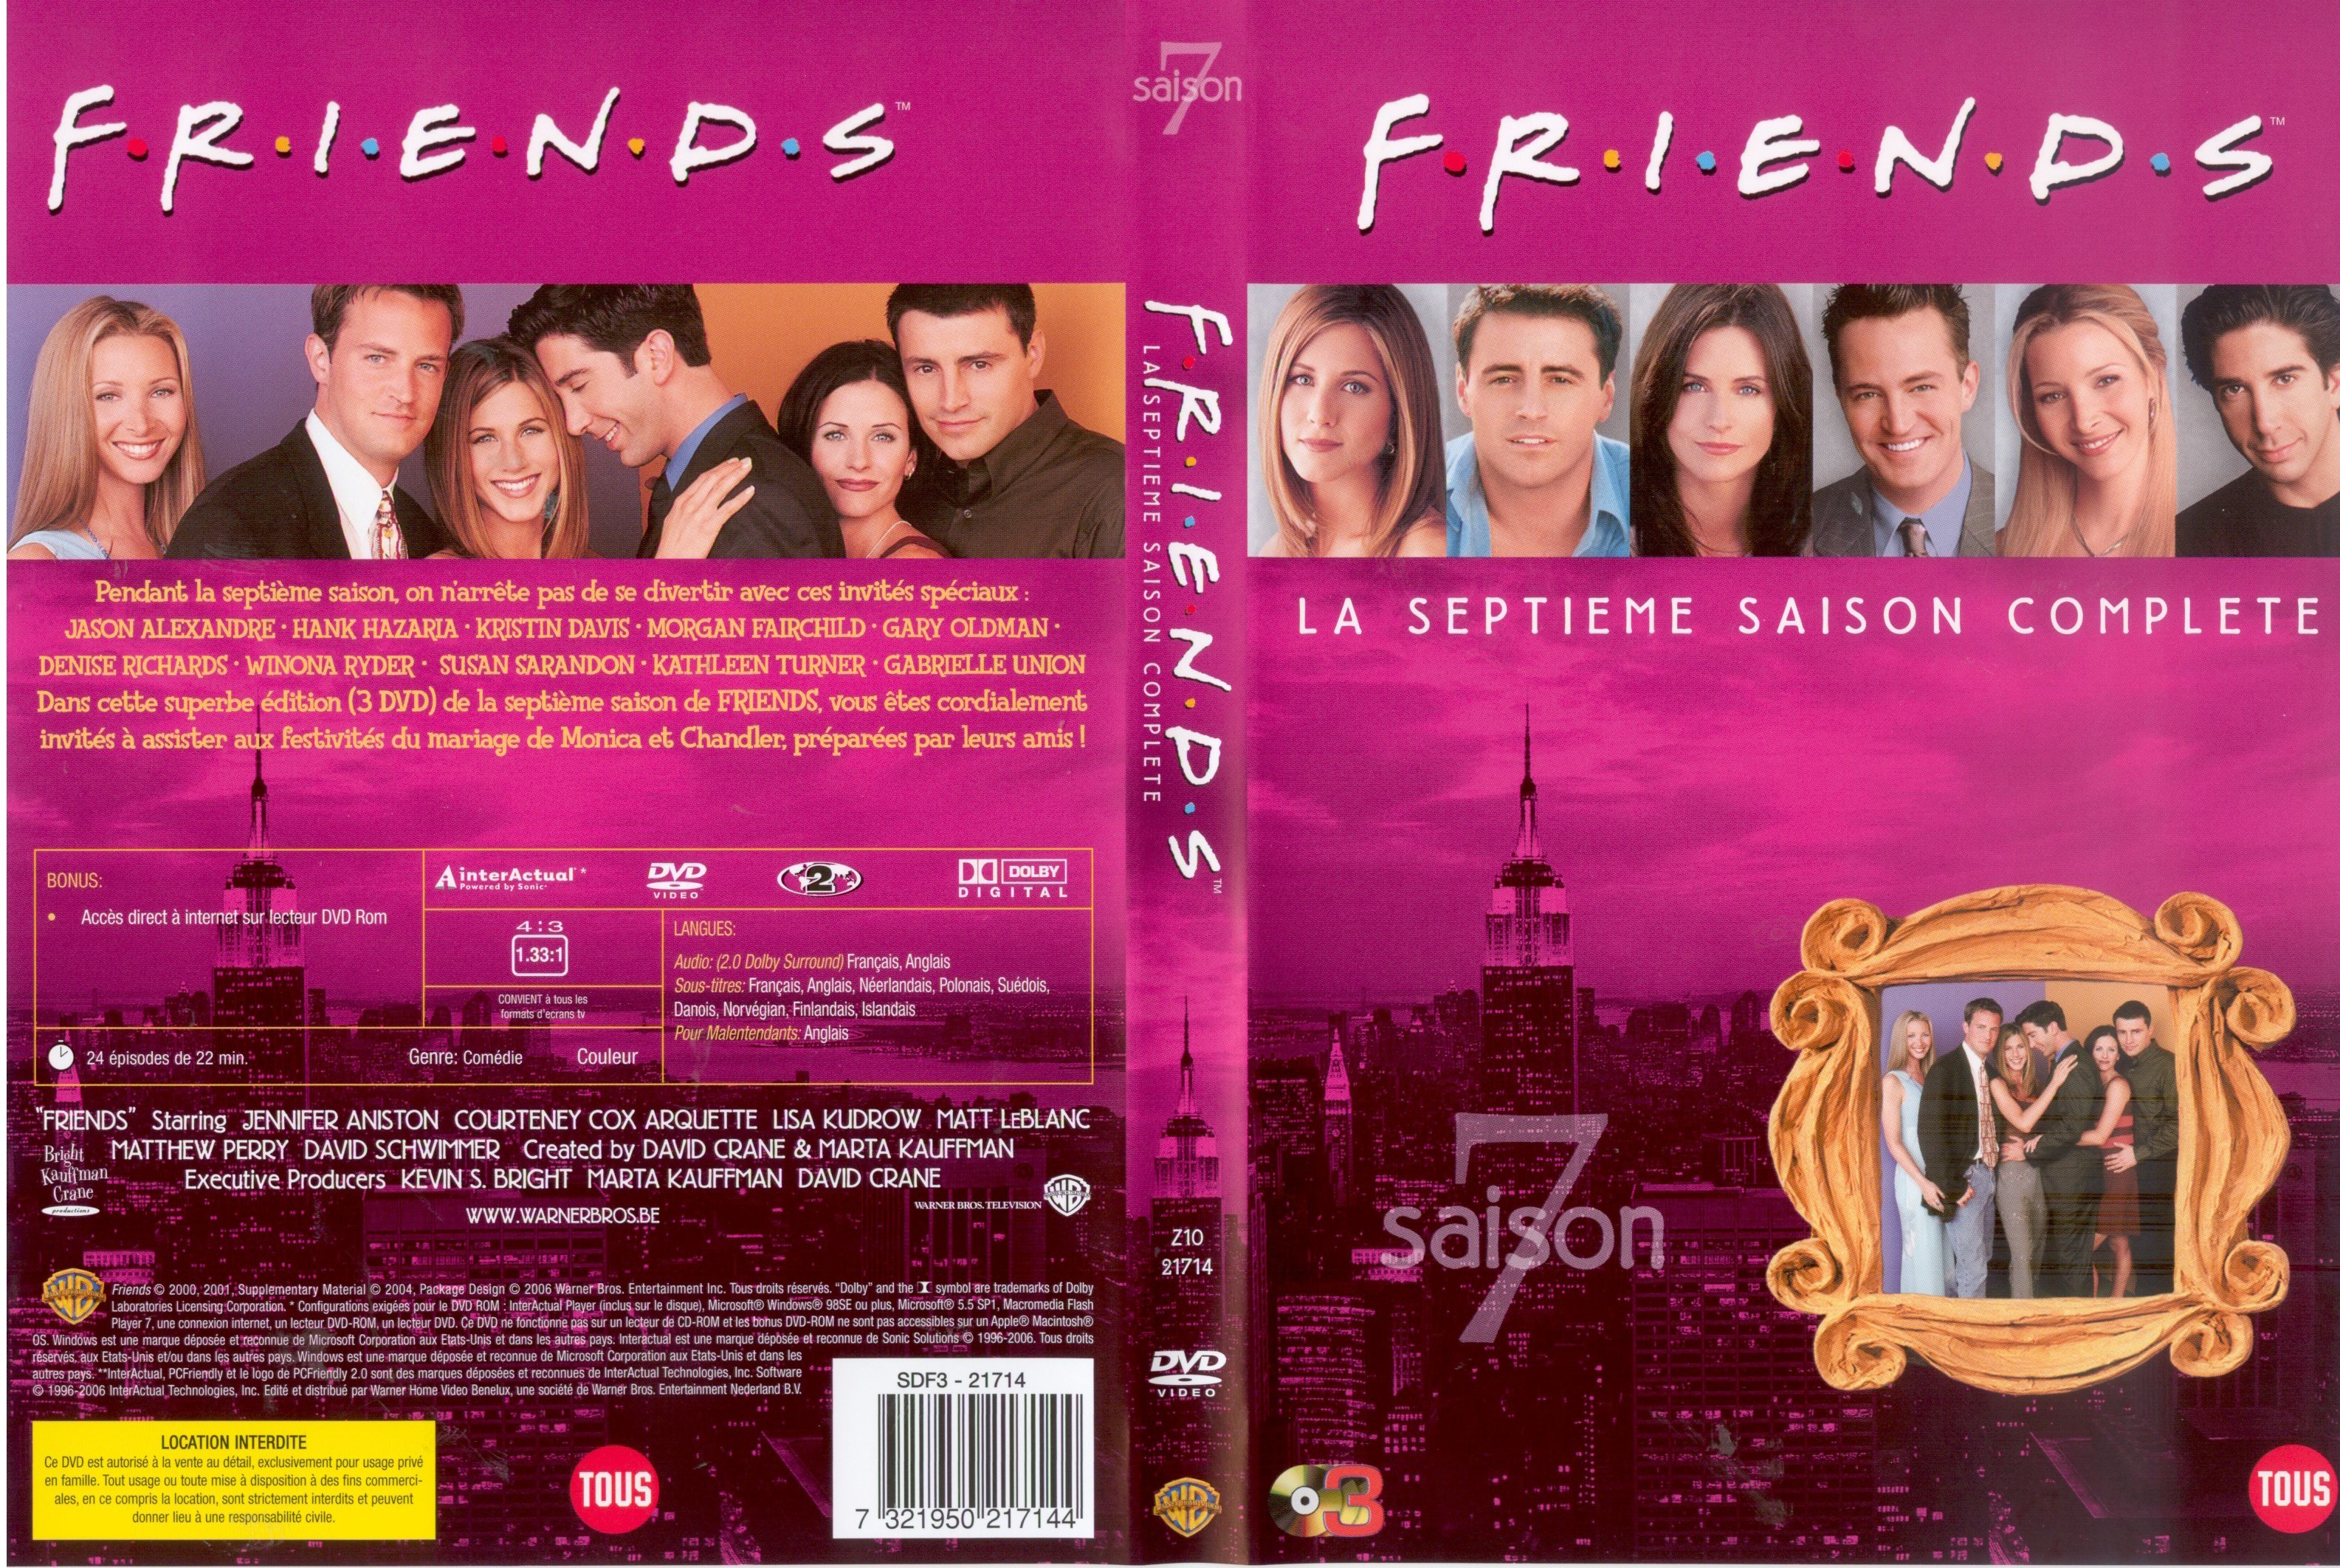 Jaquette DVD Friends Saison 7 COFFRET